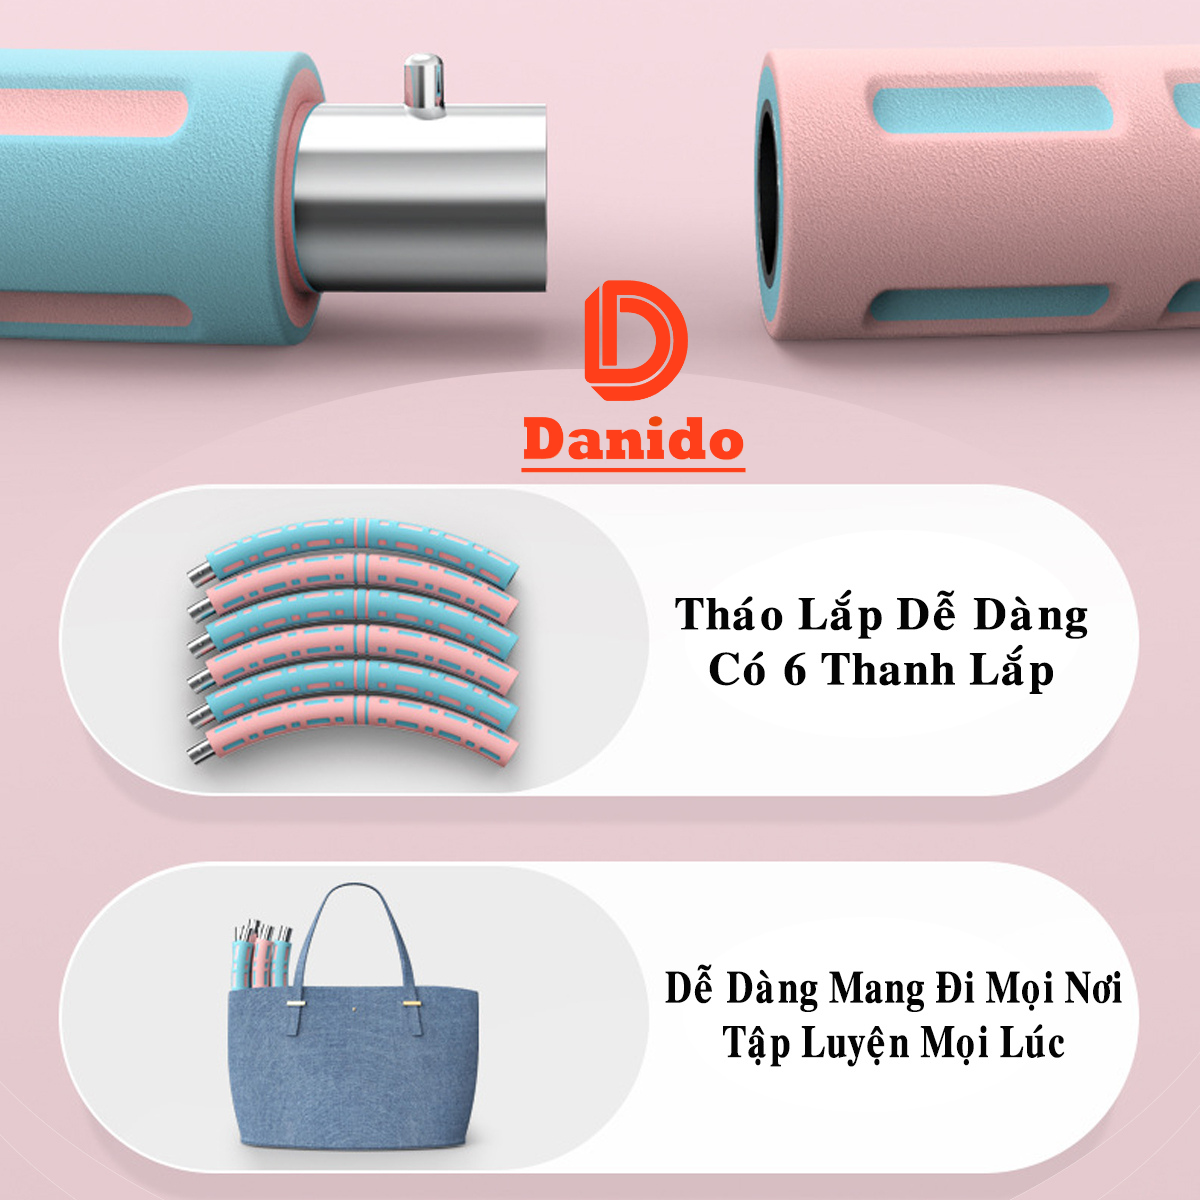 Vòng lắc eo giảm mỡ bụng ống thép cao cấp, Vòng lắc eo thon massage thế hệ mới bọc xốp tùy chỉnh độ nặng - Hàng chính hãng D Danido